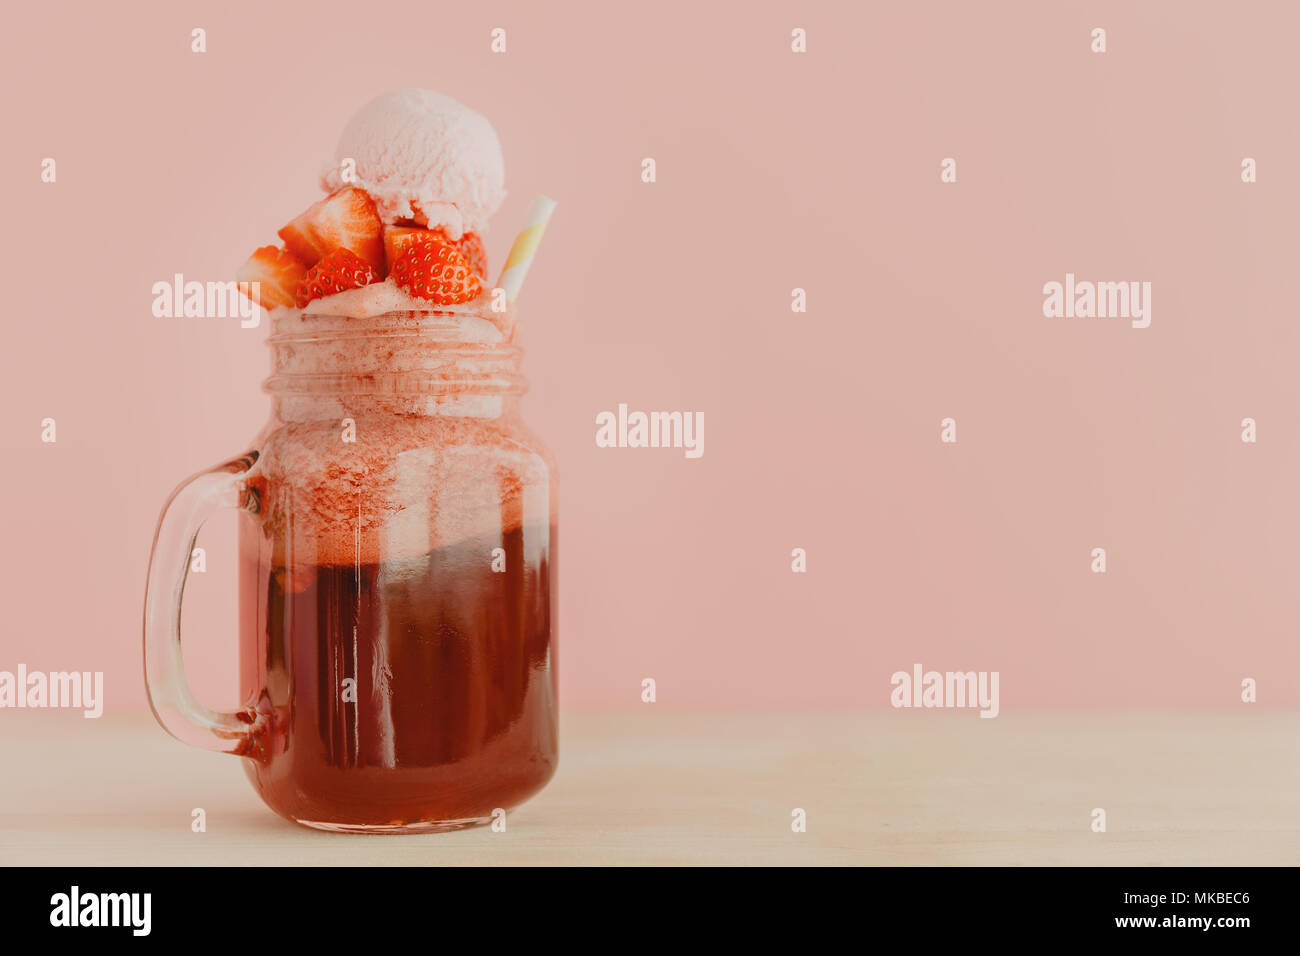 Vaso di vetro con colore rosso brillante limonata fatta di fragole guarnito con frutti di bosco e servite con paglia in rosa. Foto Stock